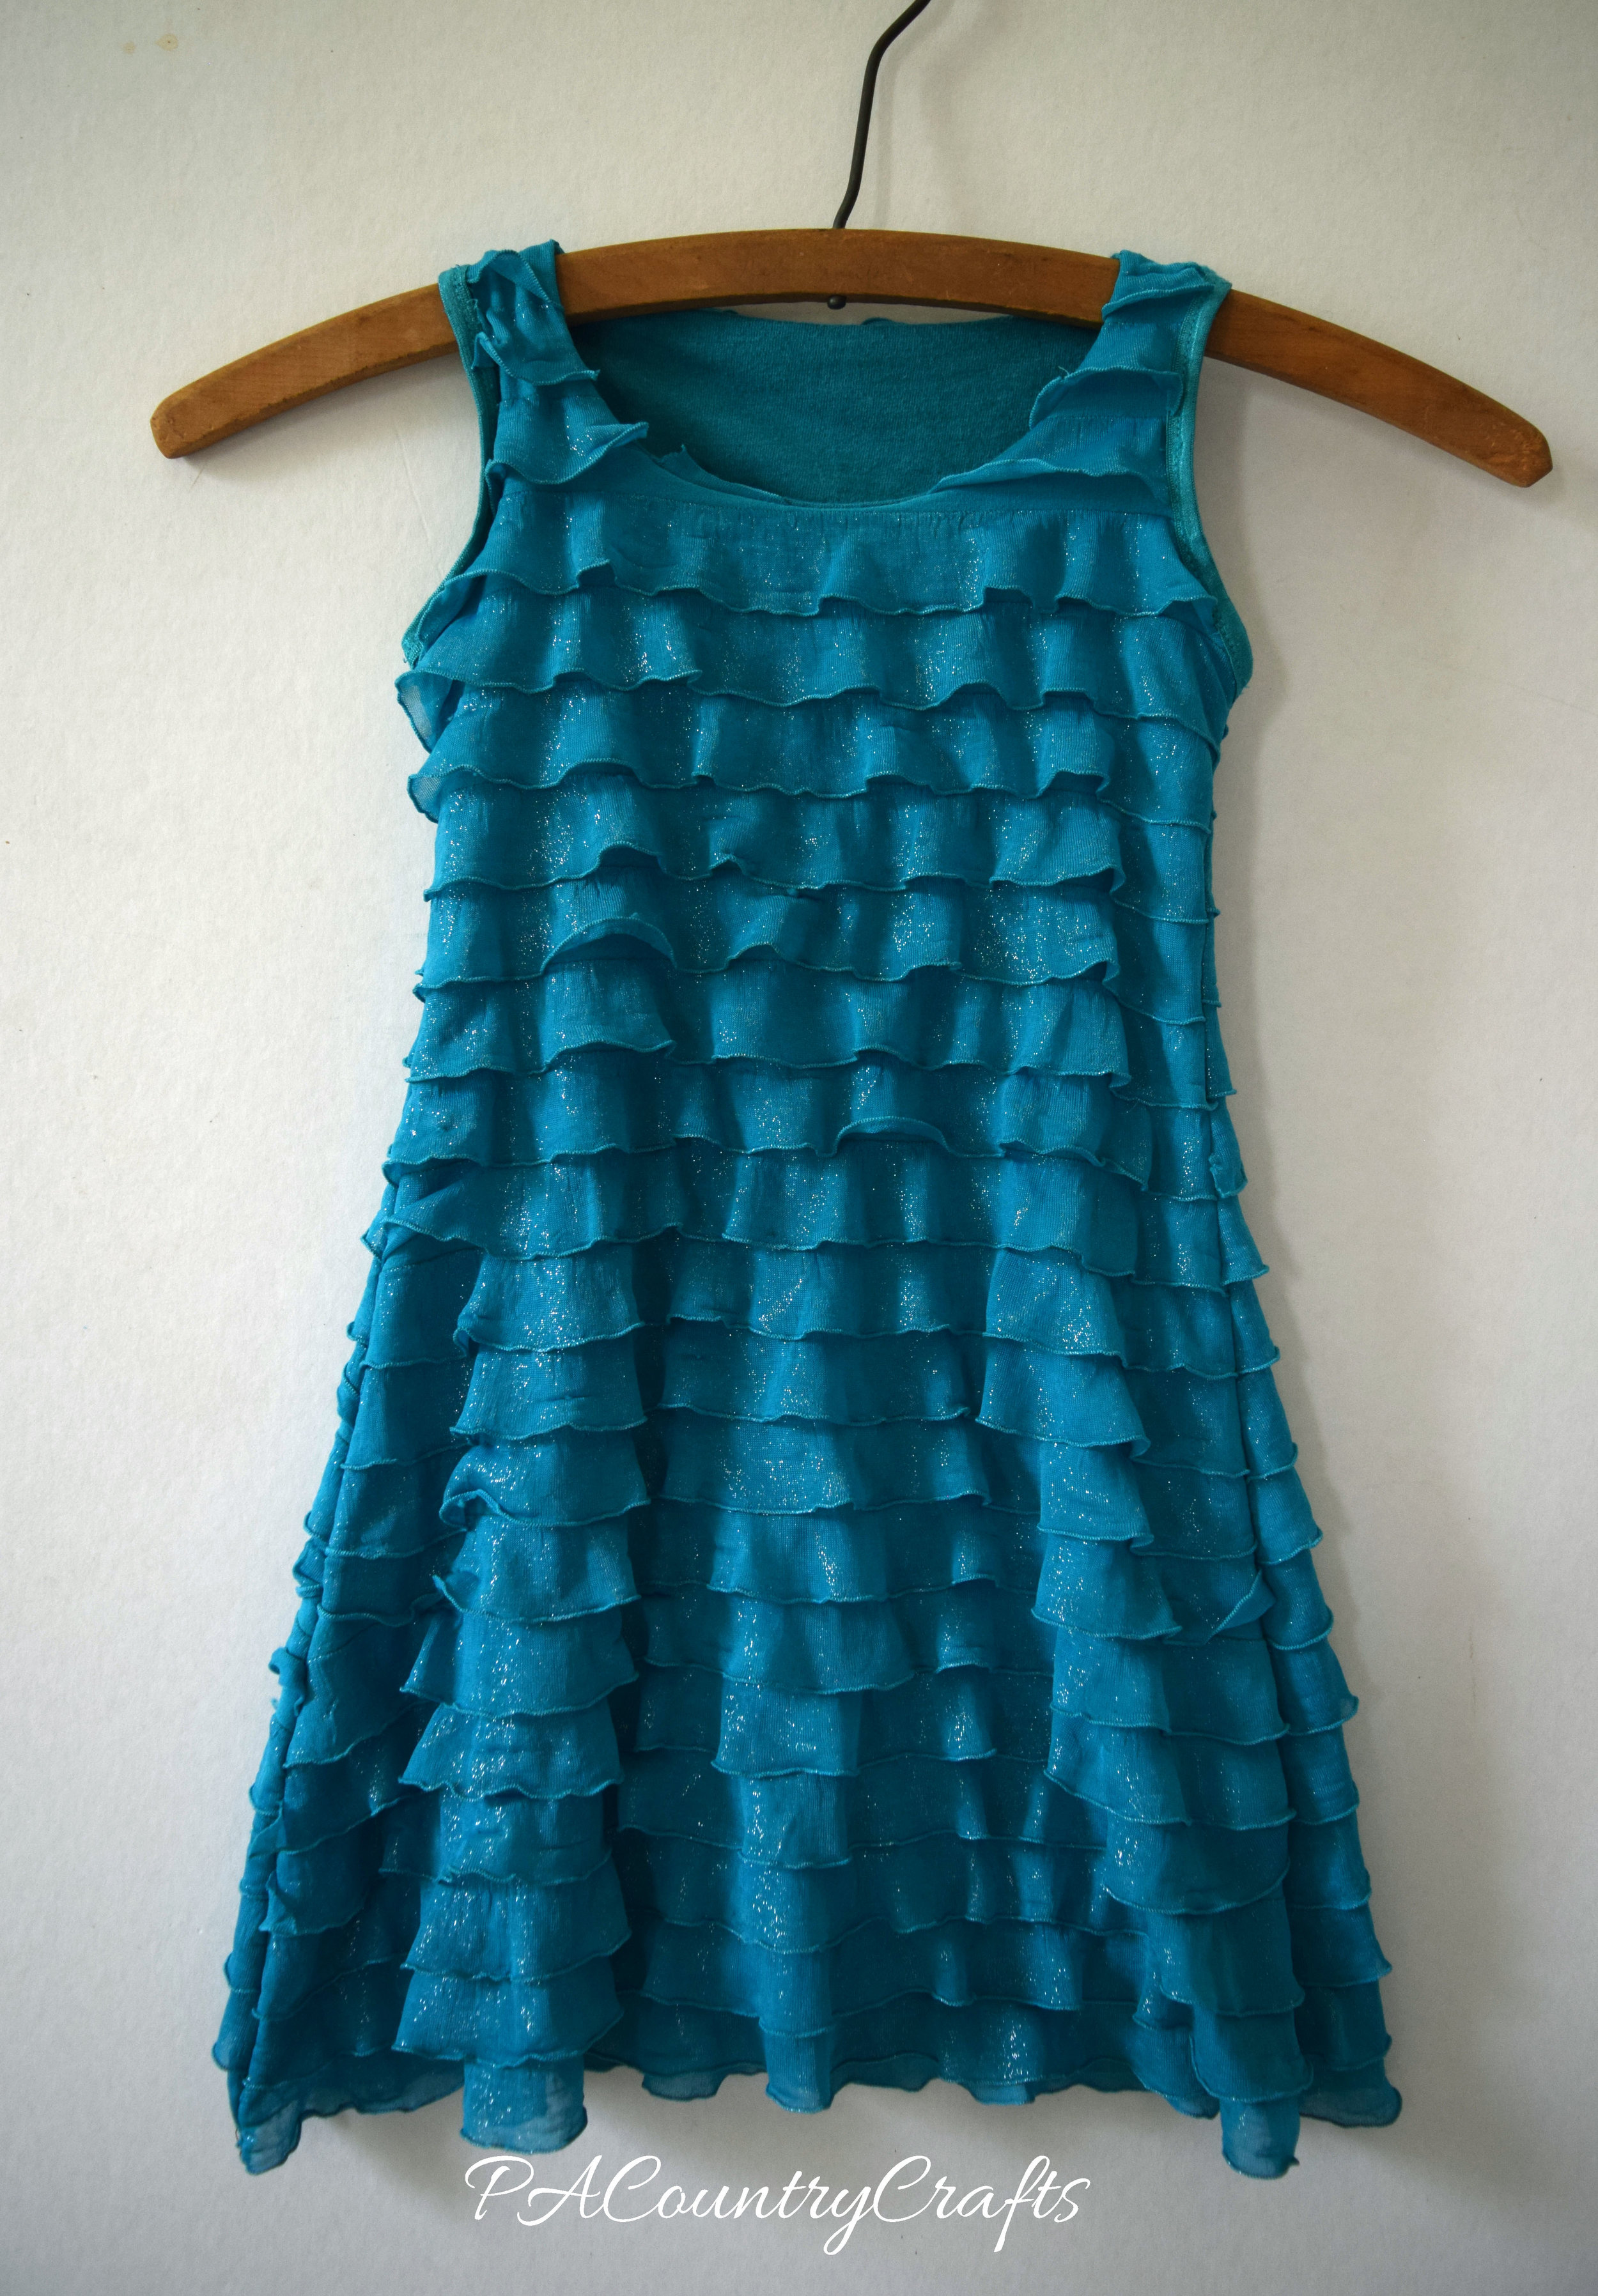 Women's Ruffle Shirt to Toddler Dress — PACountryCrafts